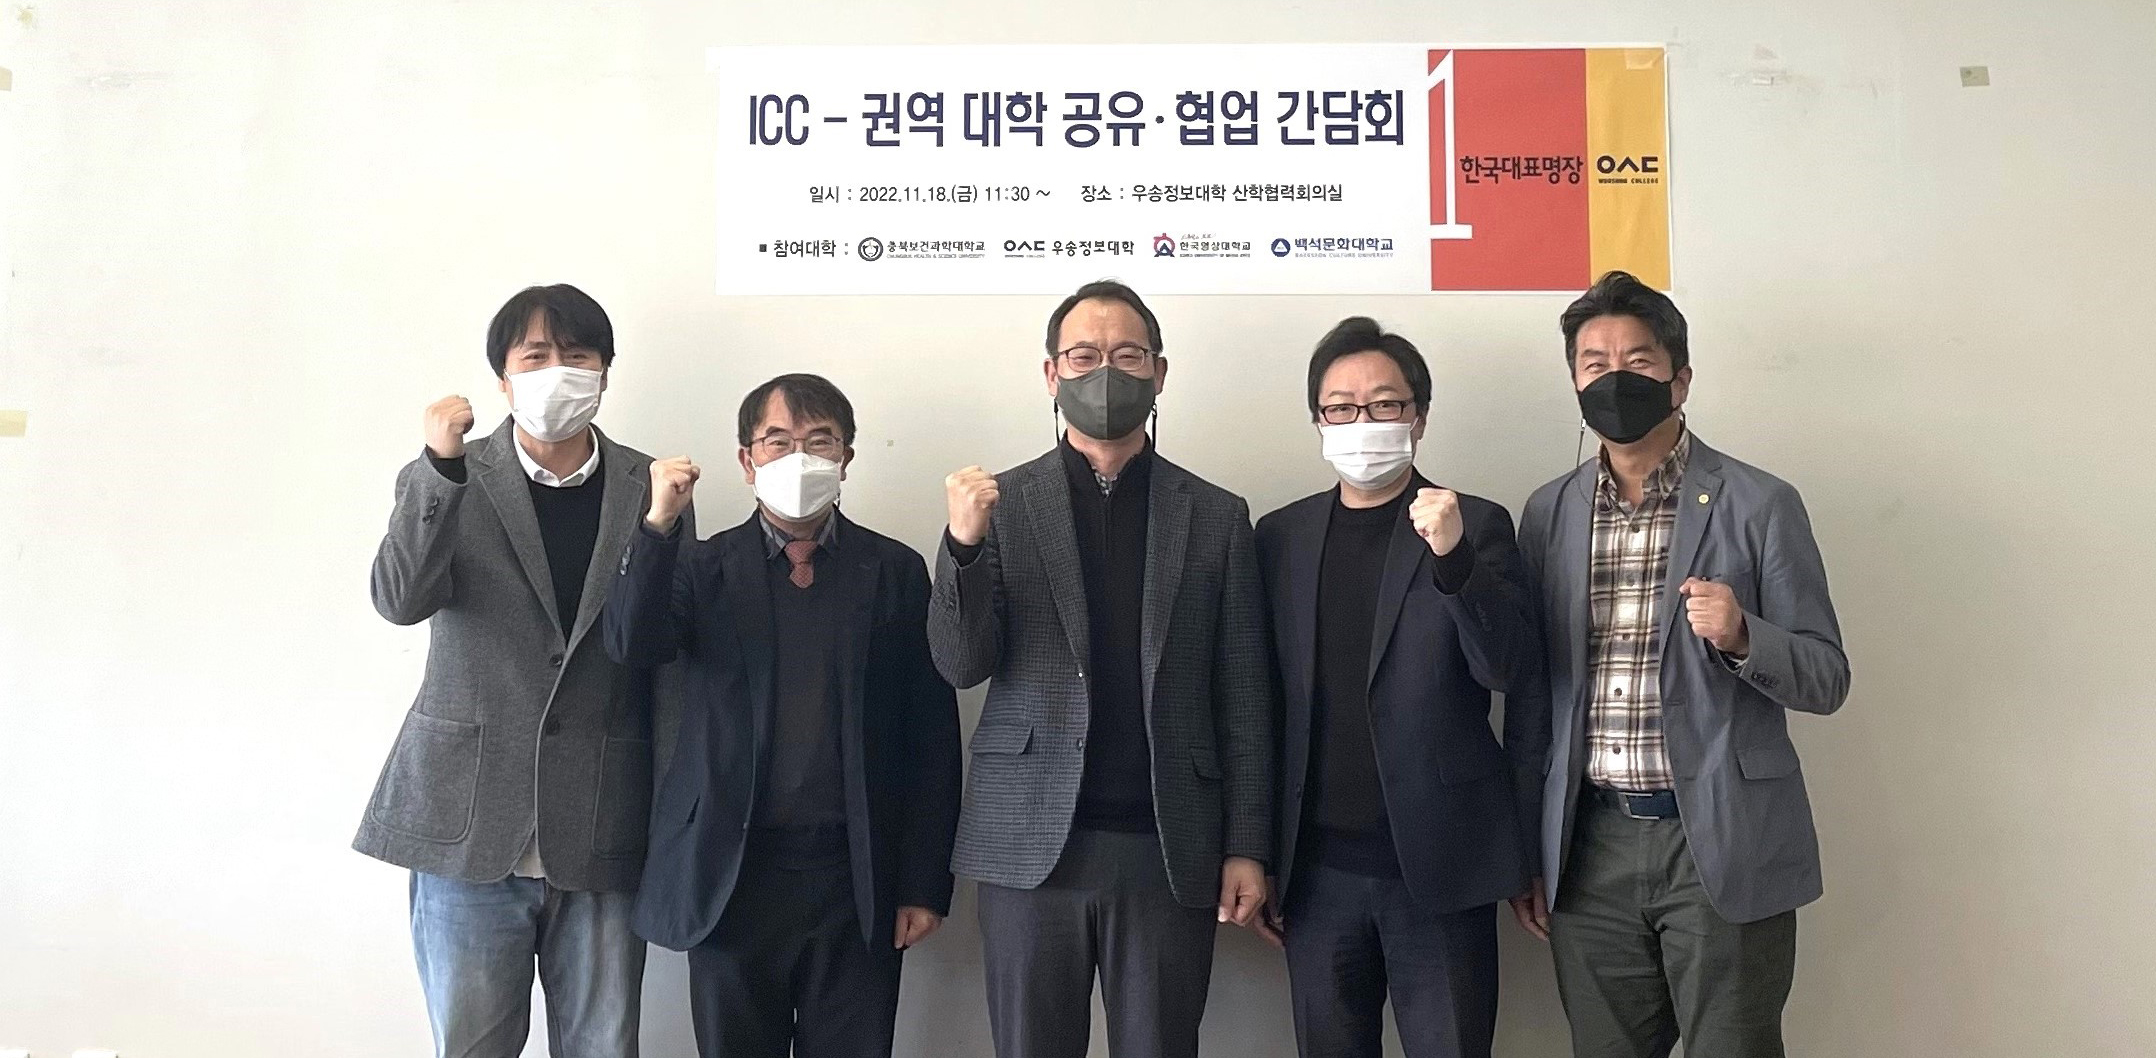 우송정보대-충북보건과학대-한국영상대-백석문화대 “ICC공유·협업 간담회” 개최